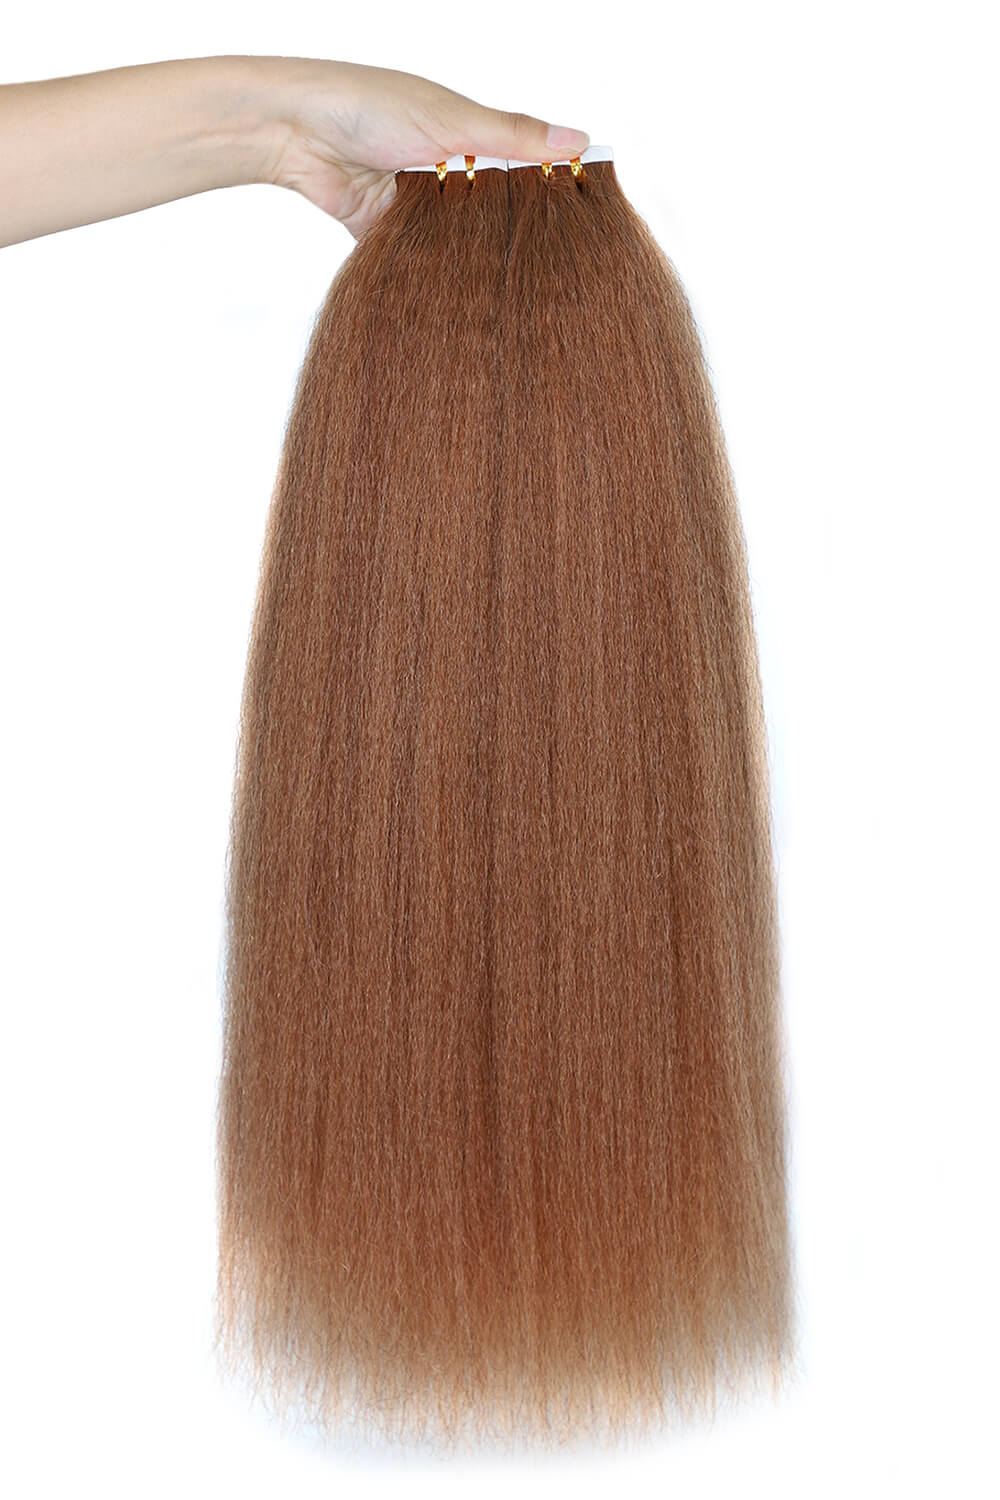 Extensiones de cabello con cinta adhesiva Cabello humano liso y rizado castaño rojizo